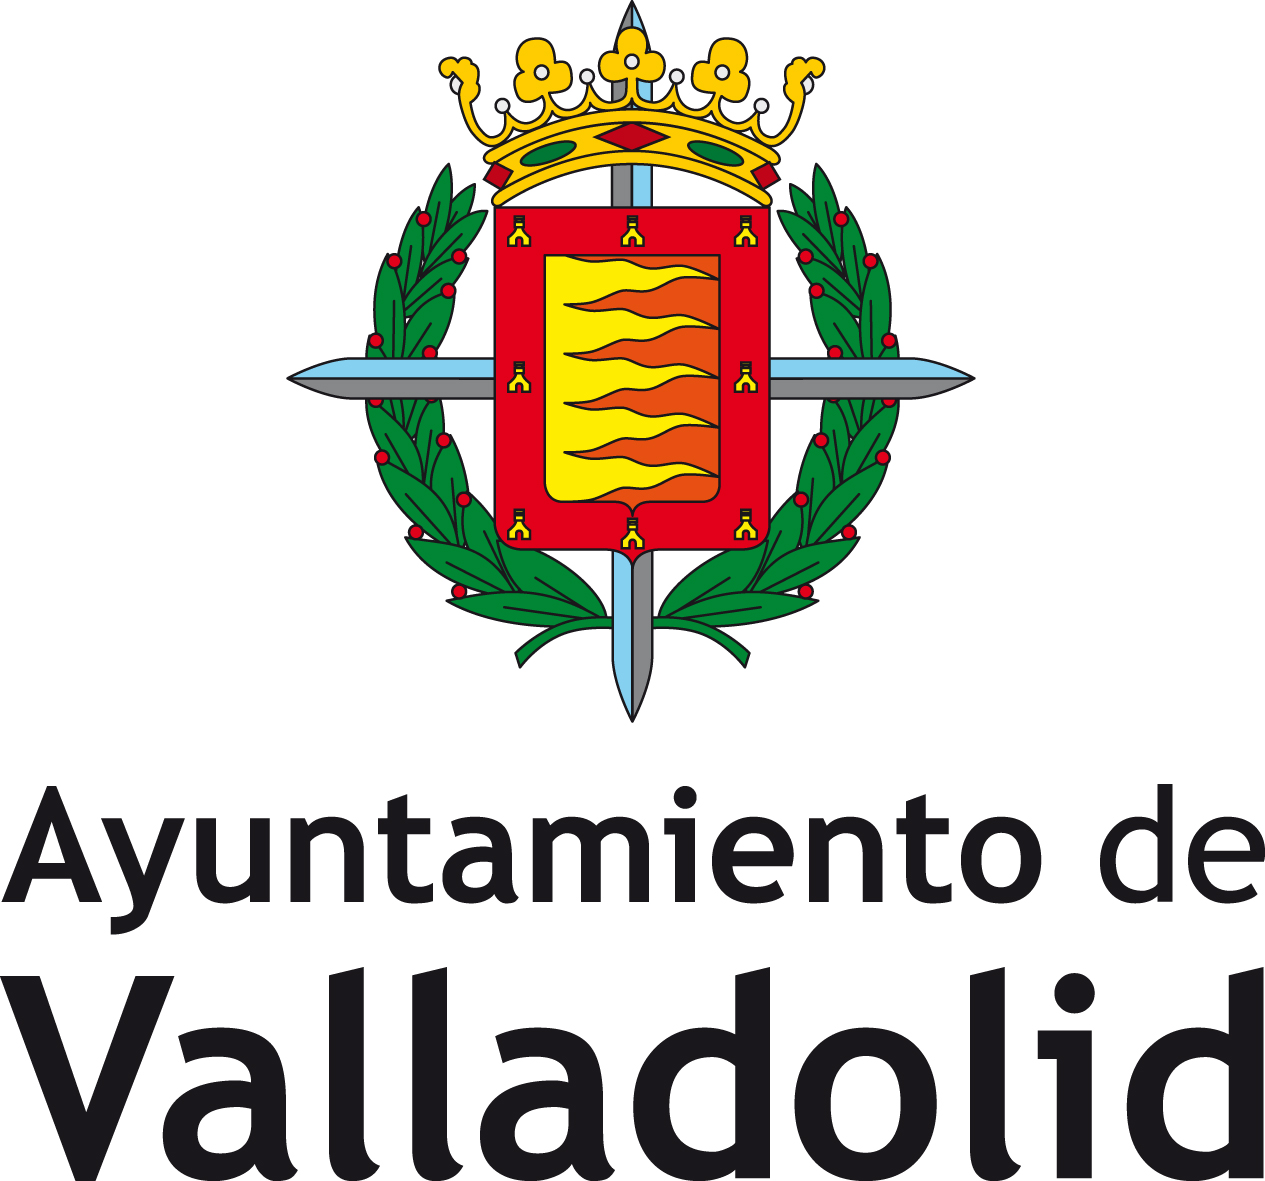 //www.educavalladolid.es/wp-content/uploads/2019/10/logotipo_del_ayuntamiento.jpg